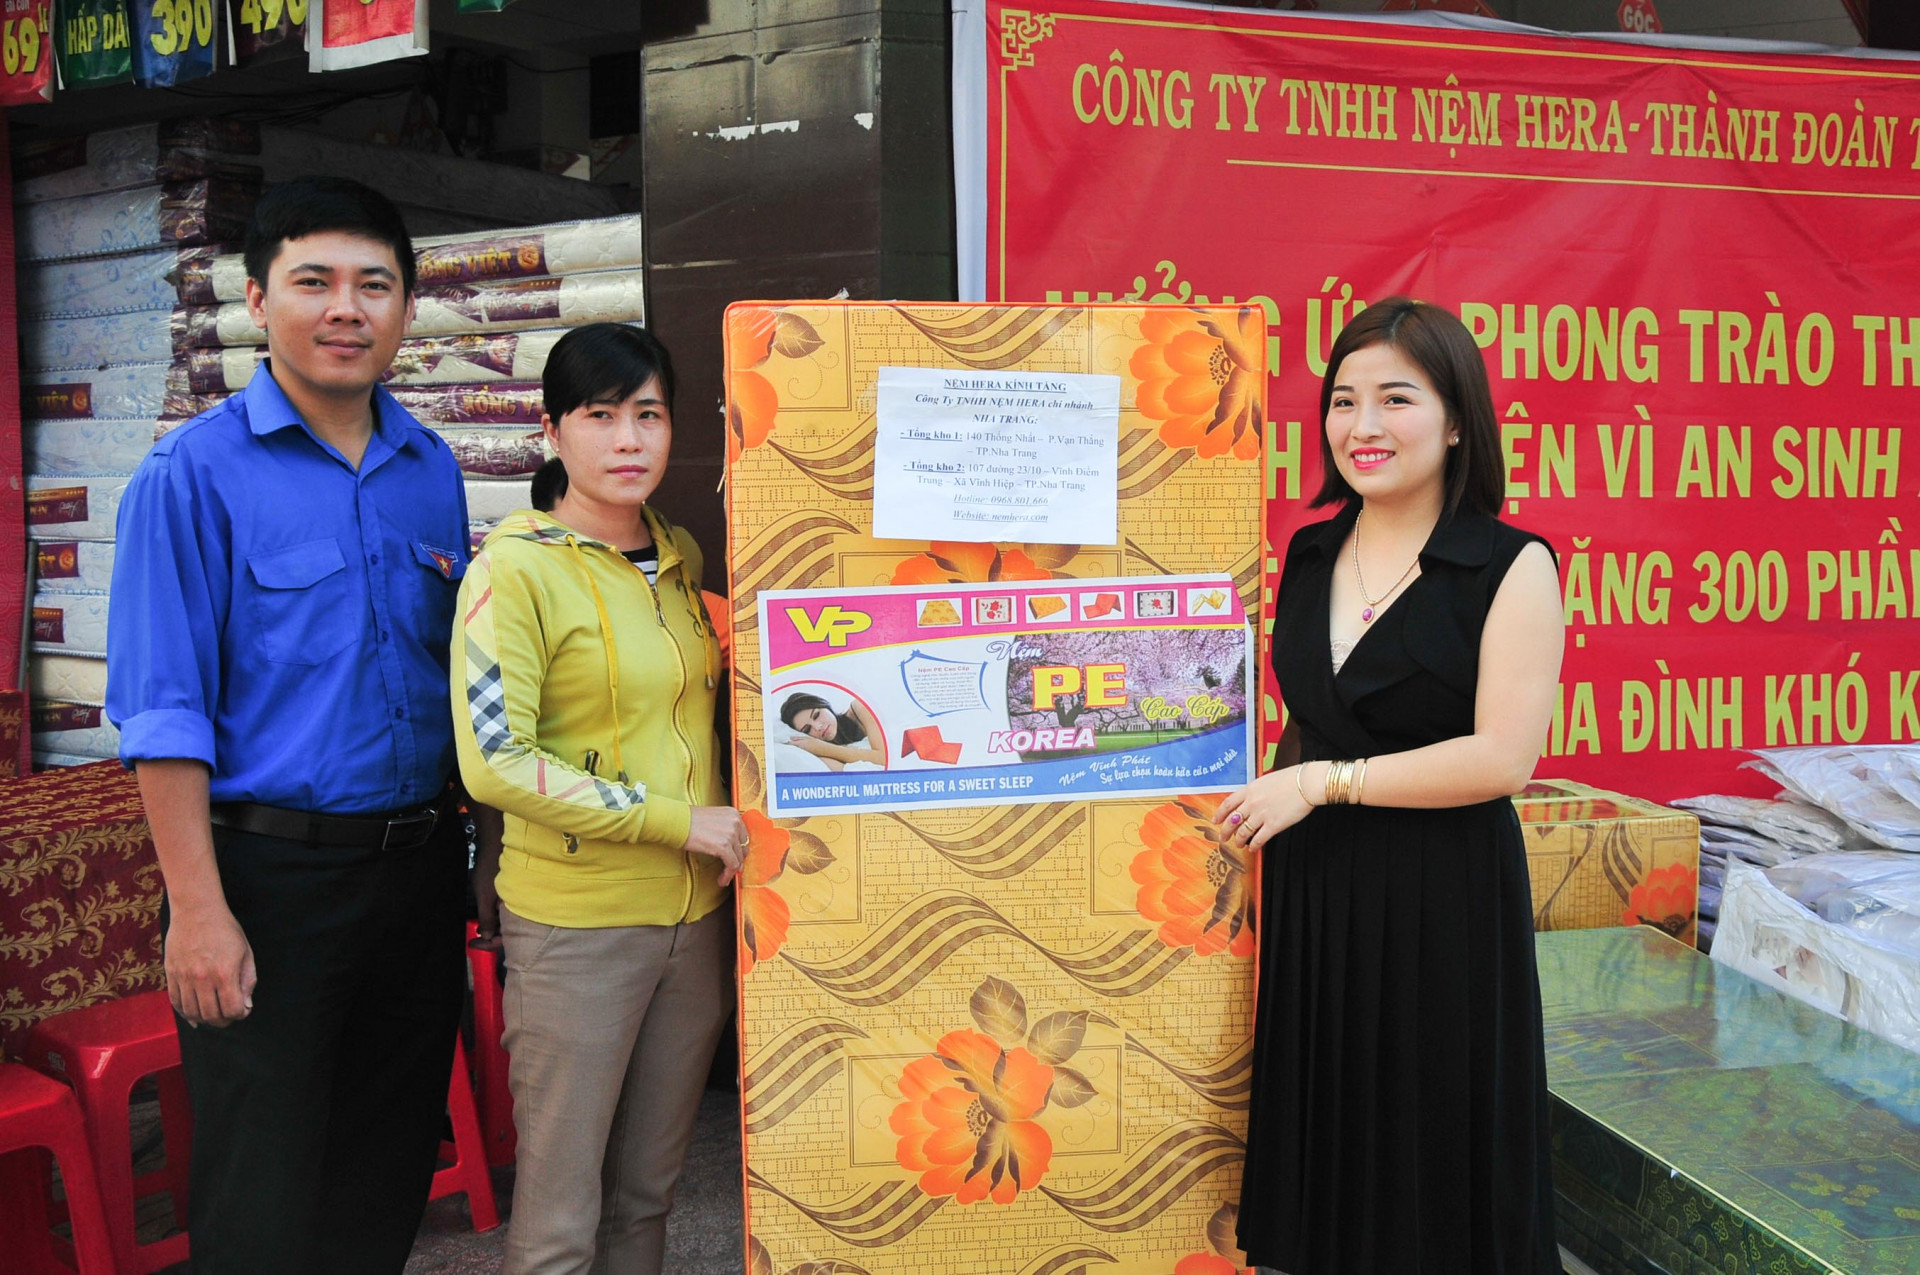 Công ty TNHH Nệm Hera cùng Thành đoàn Nha Trang trao quà cho gia đình có hoàn cảnh khó khăn